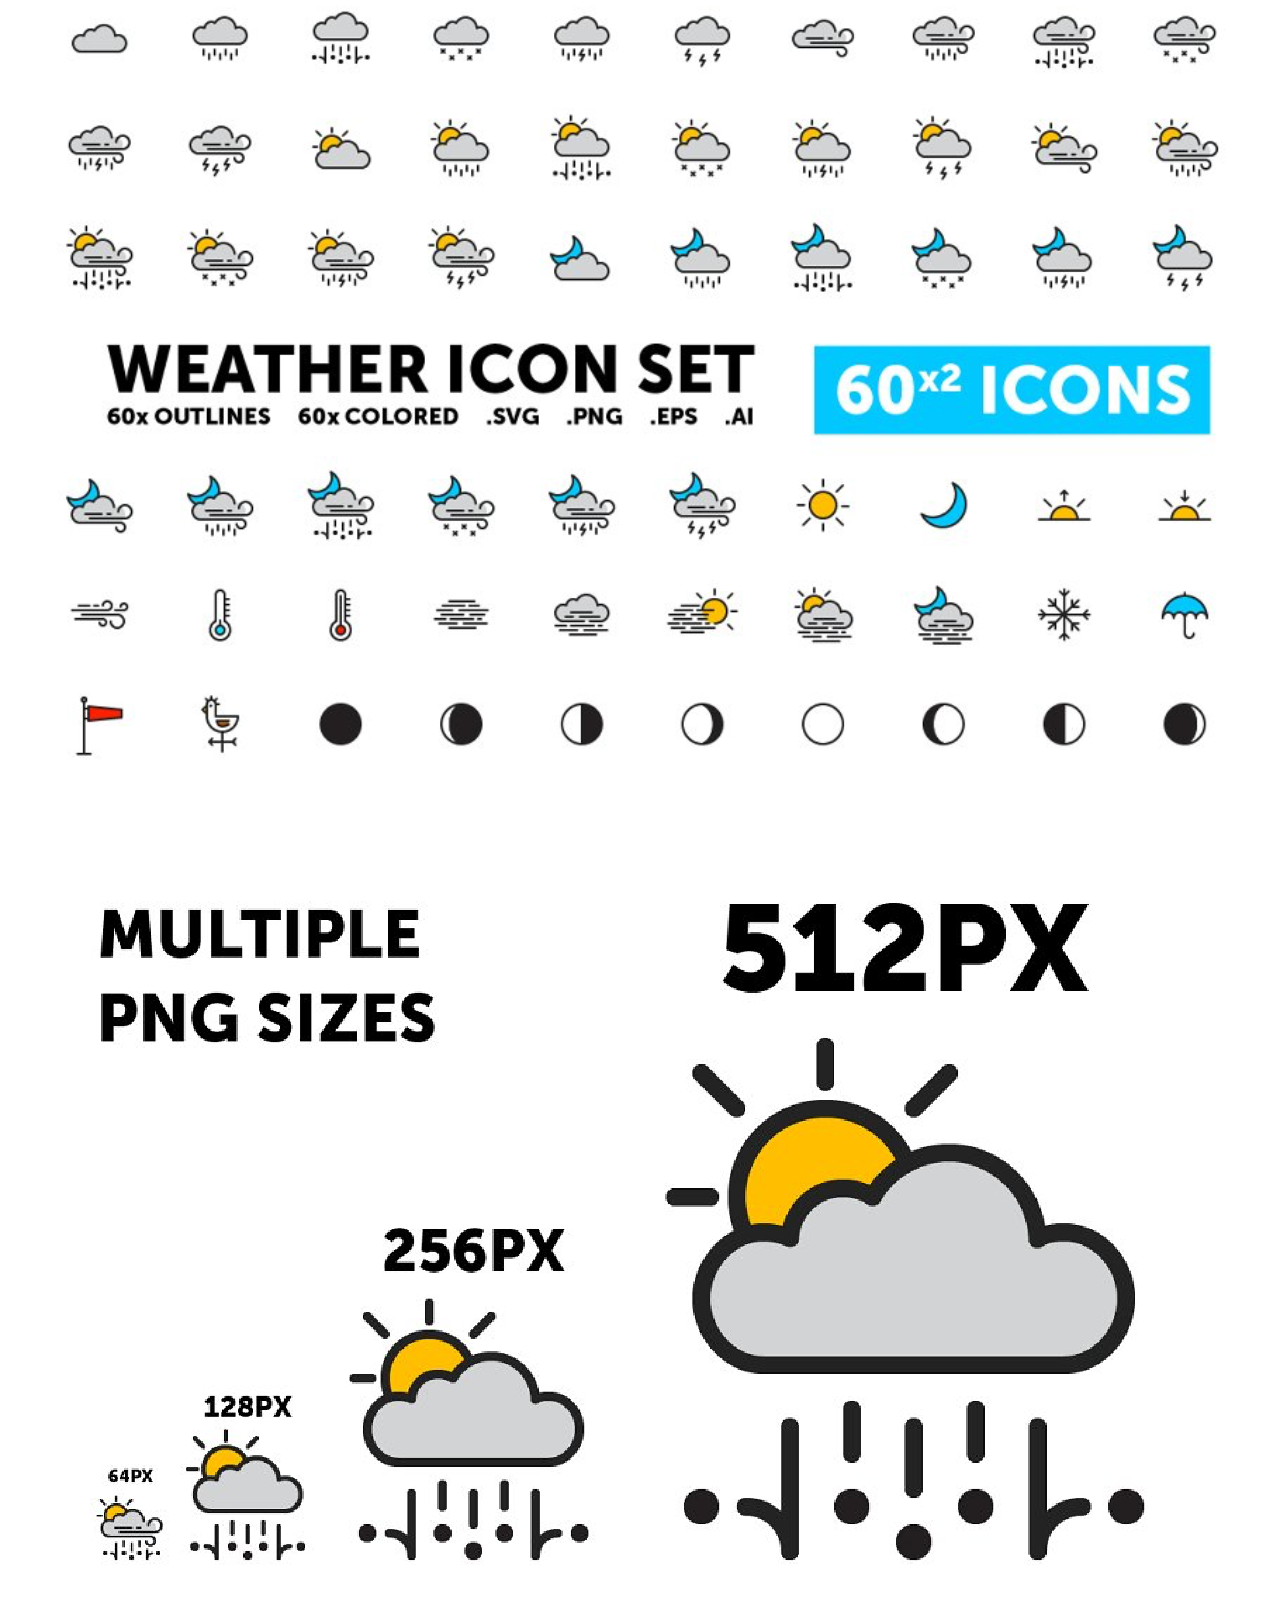 Weather icon set 60x2 icons pinterest image.